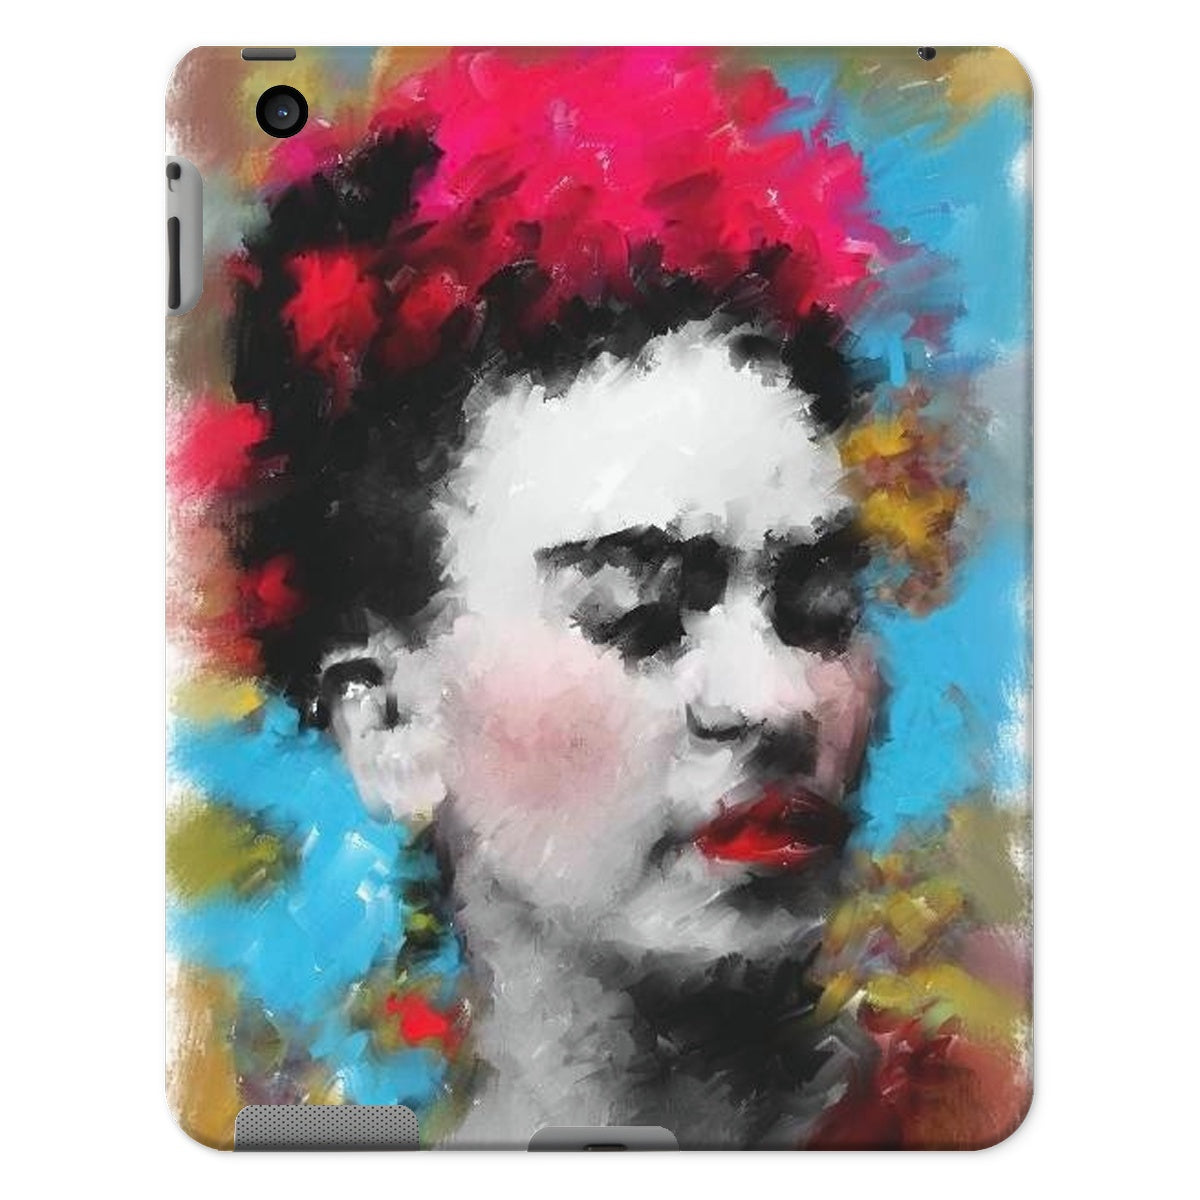 Frida Kahlo - Portrait Tablet Cases